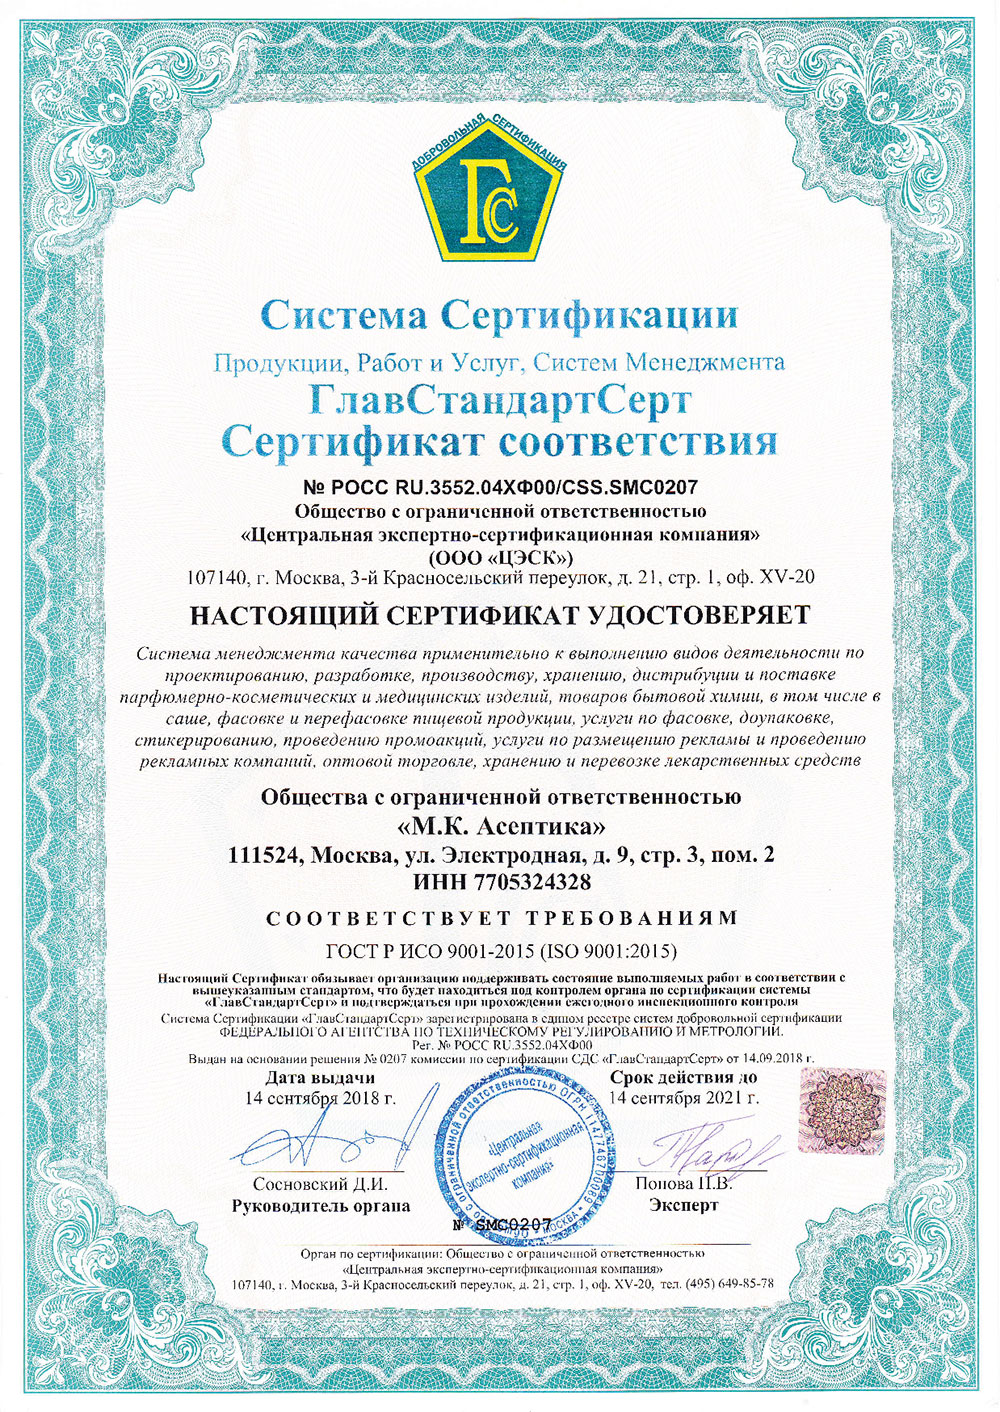 ГлавСтандартСерт — Сертификат соответствия